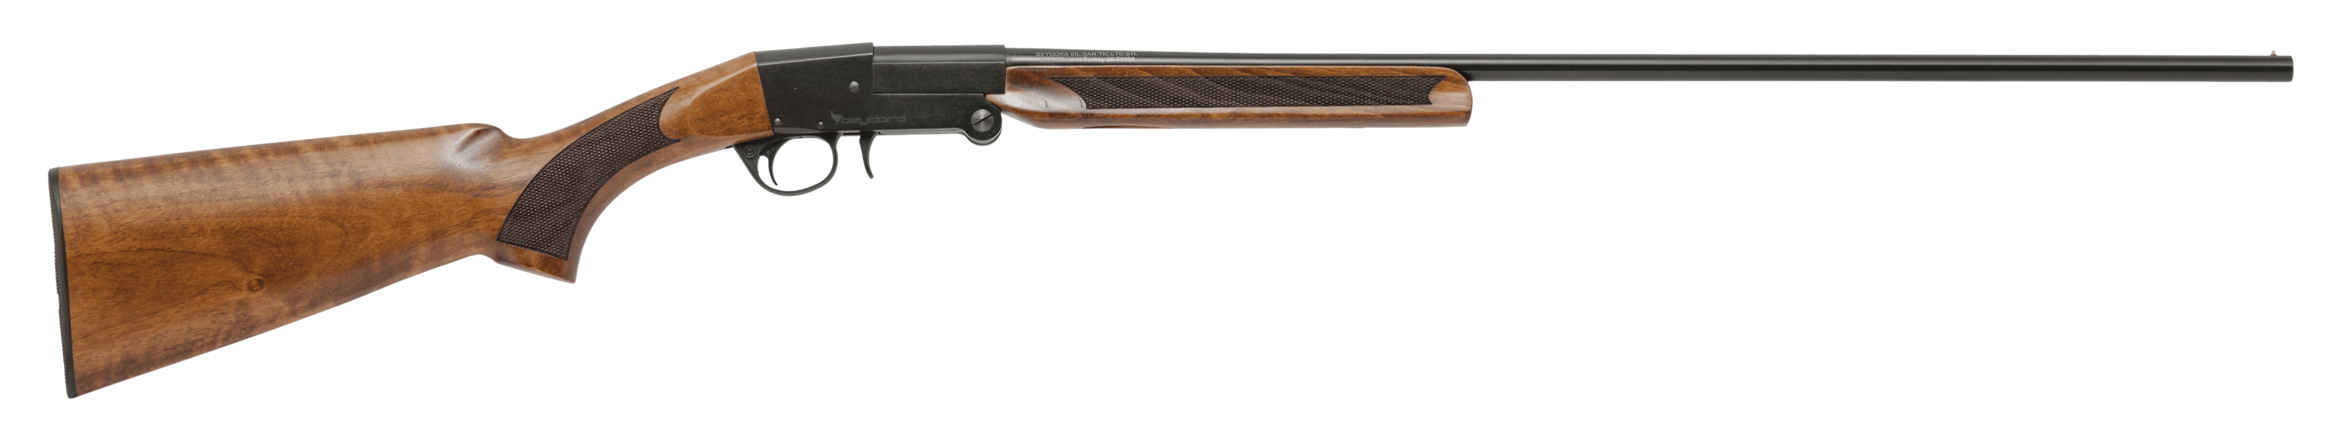 Ружье Beydora BDR 09 Wood 12x76 510мм черный ресивер прицельная планка - фото 1